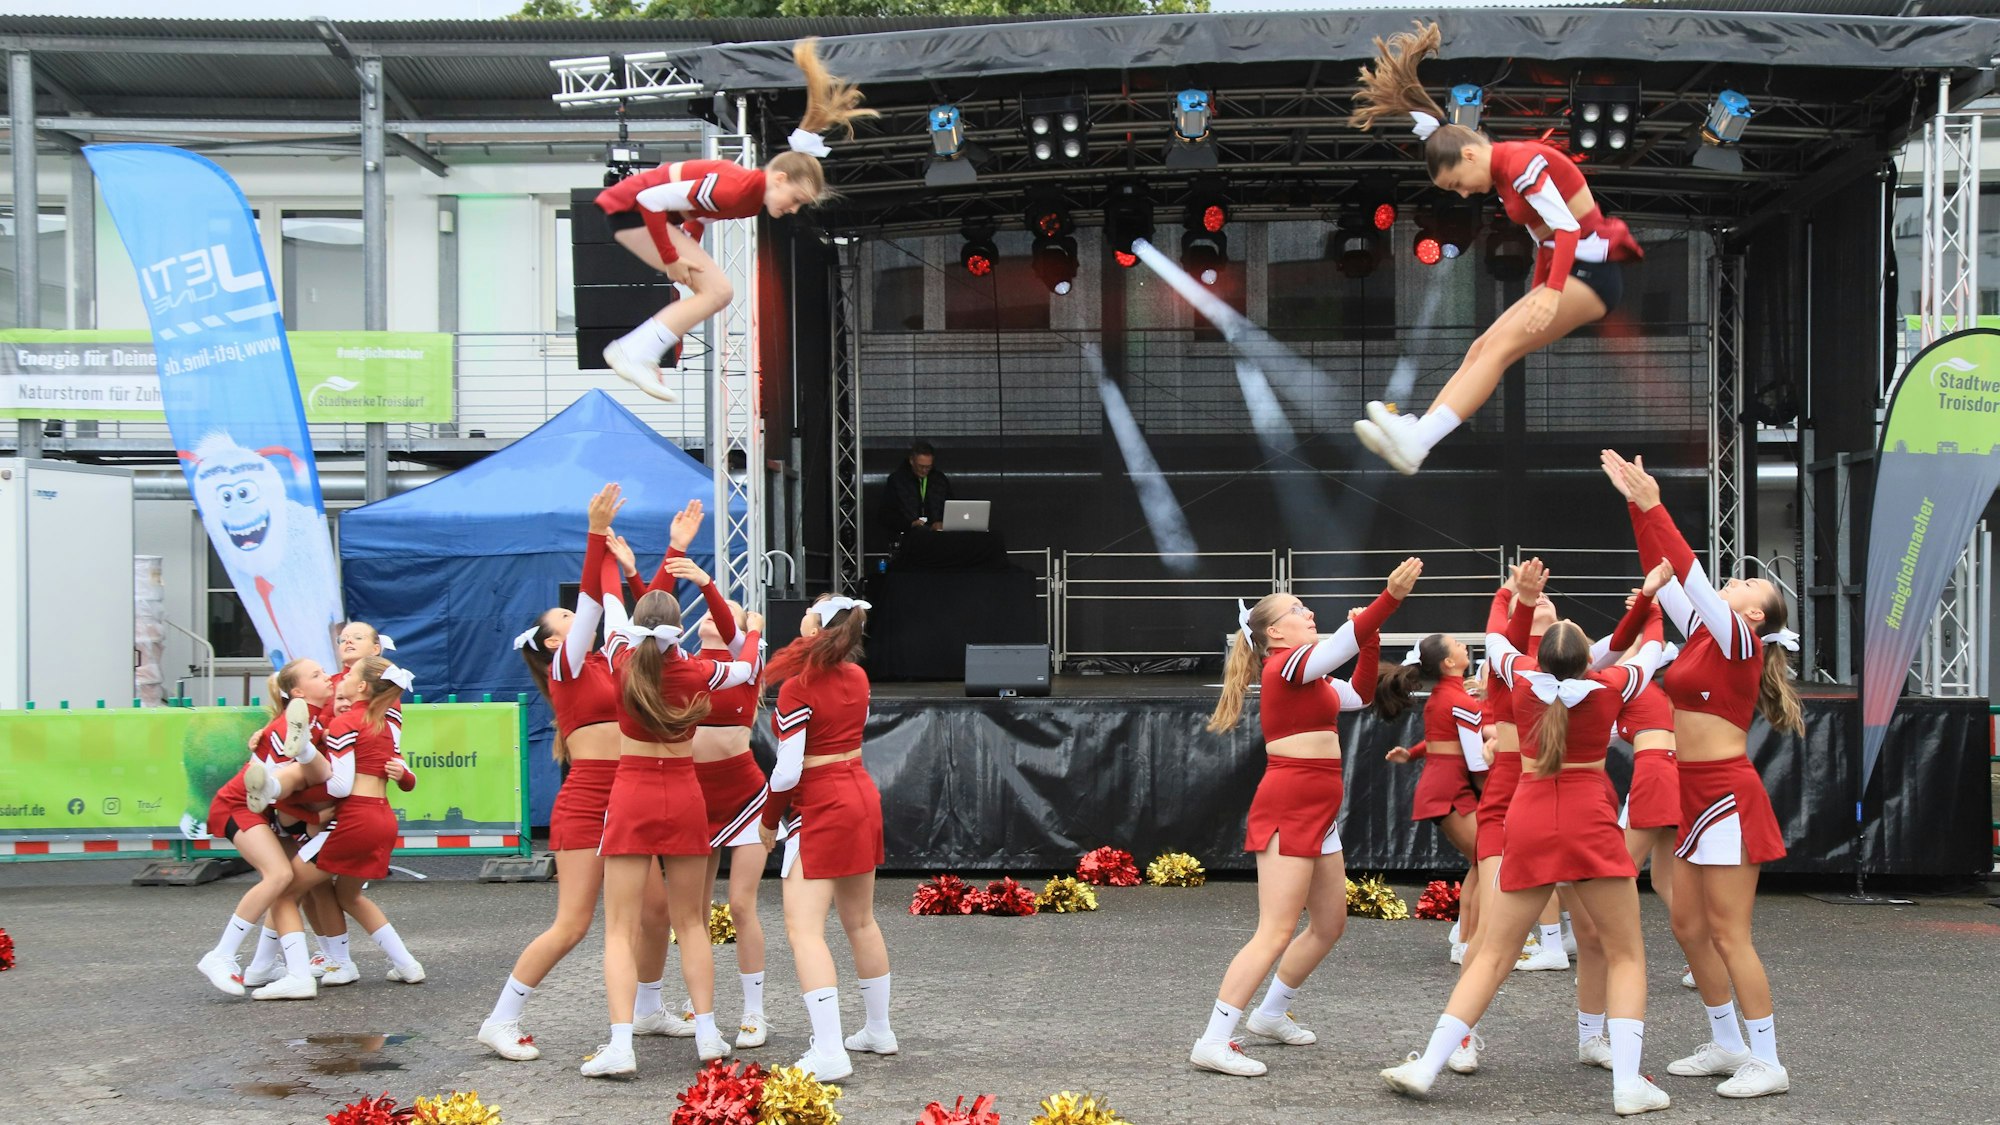 Die Cheerleader der Troisdorf Jets zeigen spektakuläre Akrobatik, bei der Tänzerinnen in der Luft wirbeln.